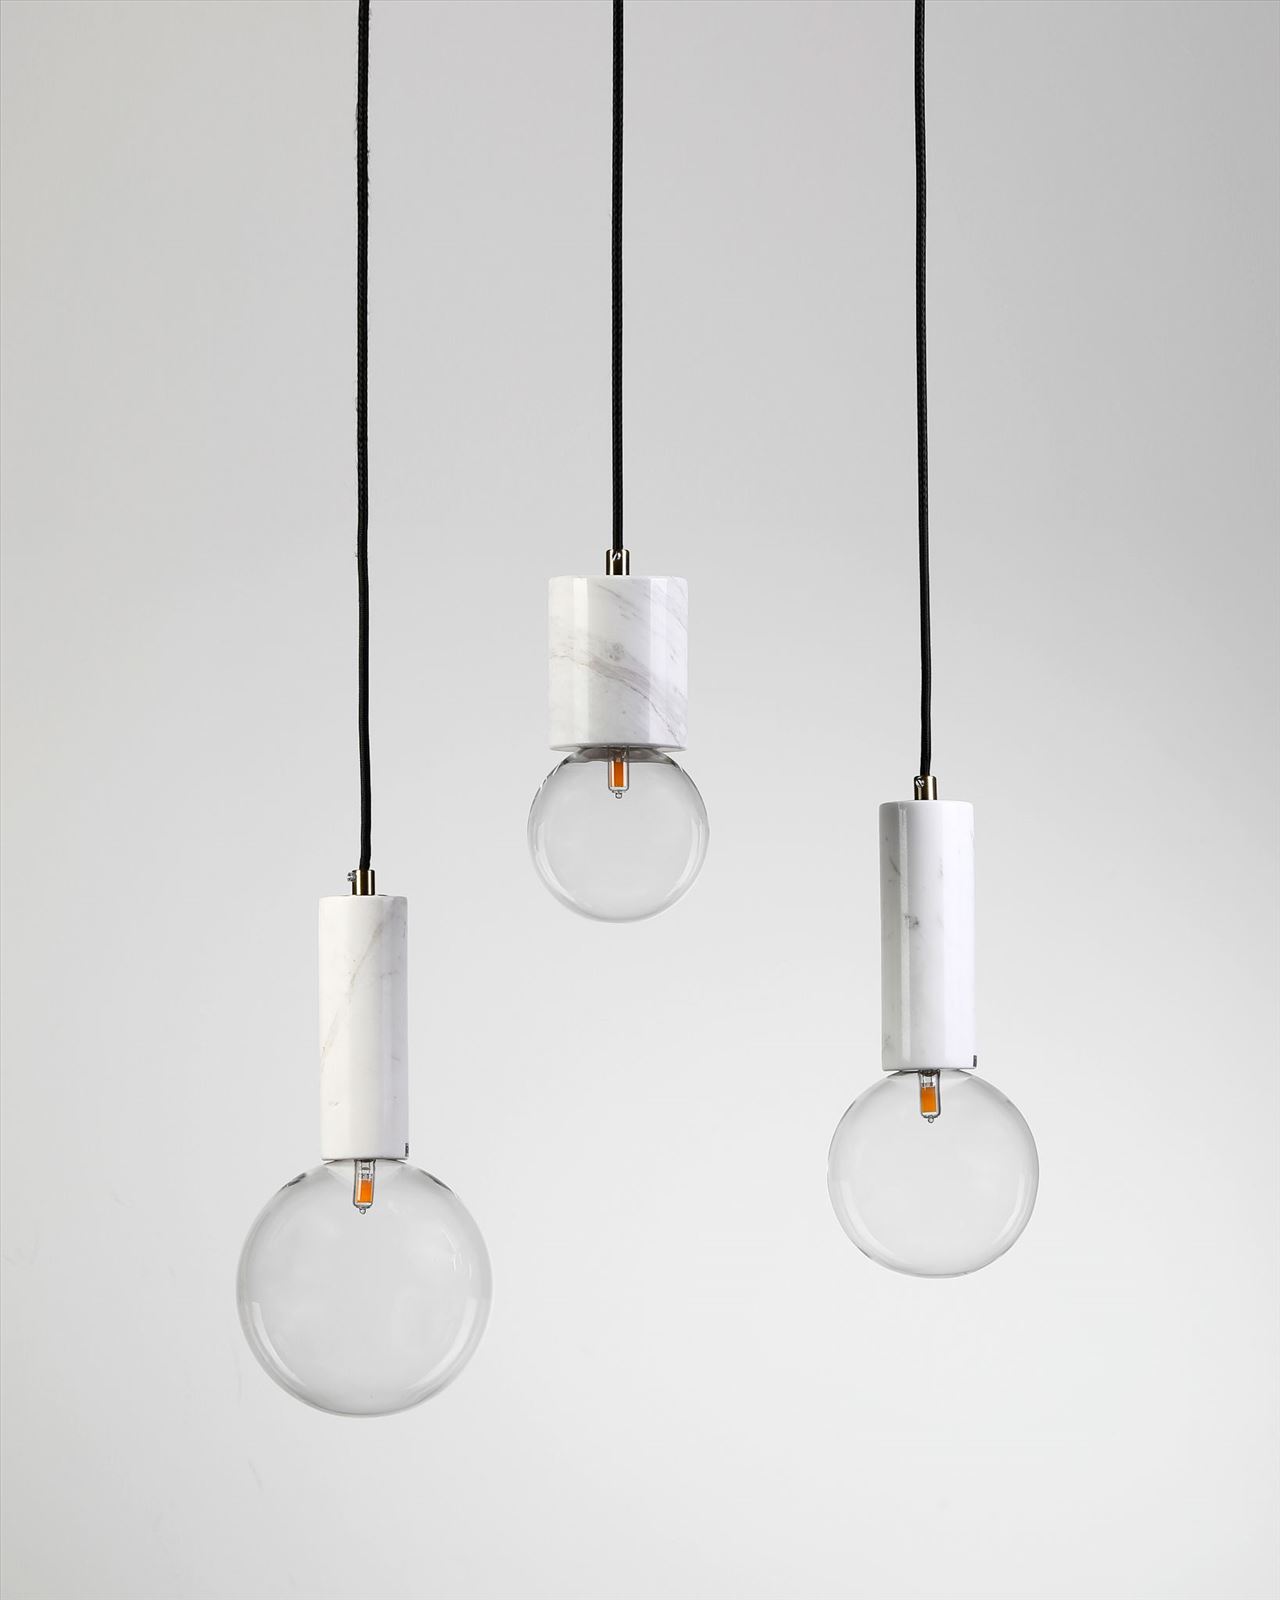 גופי תאורה בקטגוריית מנורות תלויות שם המוצר Badolina • Dori Kimhi Lighting 1045